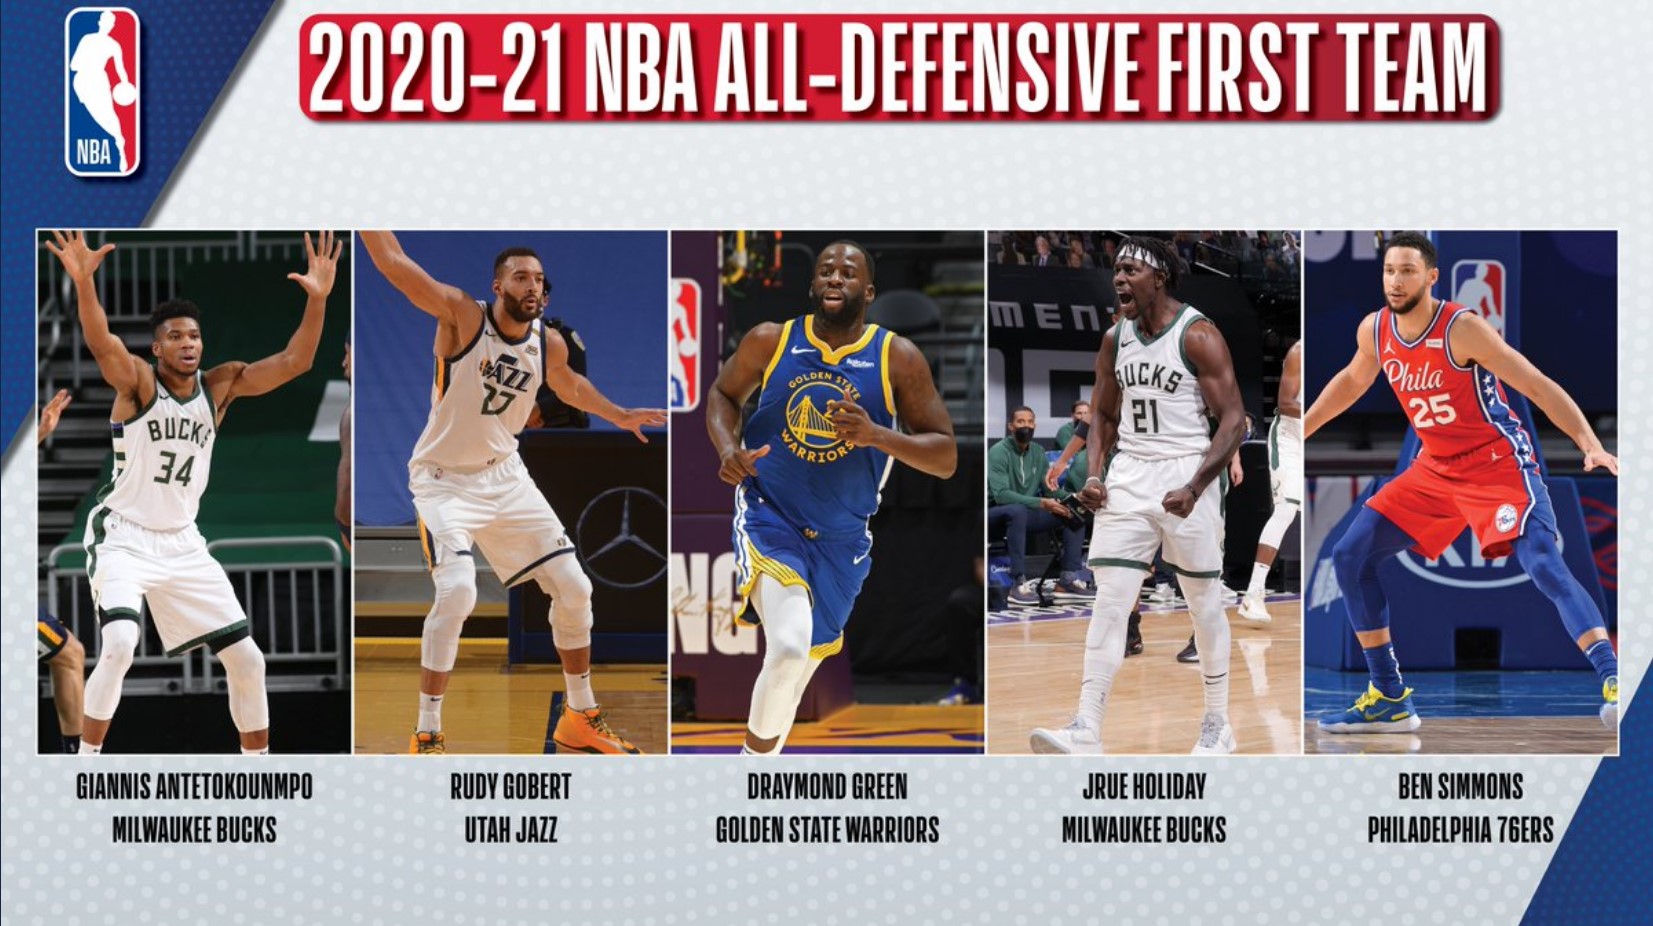 Ben Simmons sánh vai với Rudy Gobert trong đội hình NBA All-Defensive 2020-21 - Ảnh 2